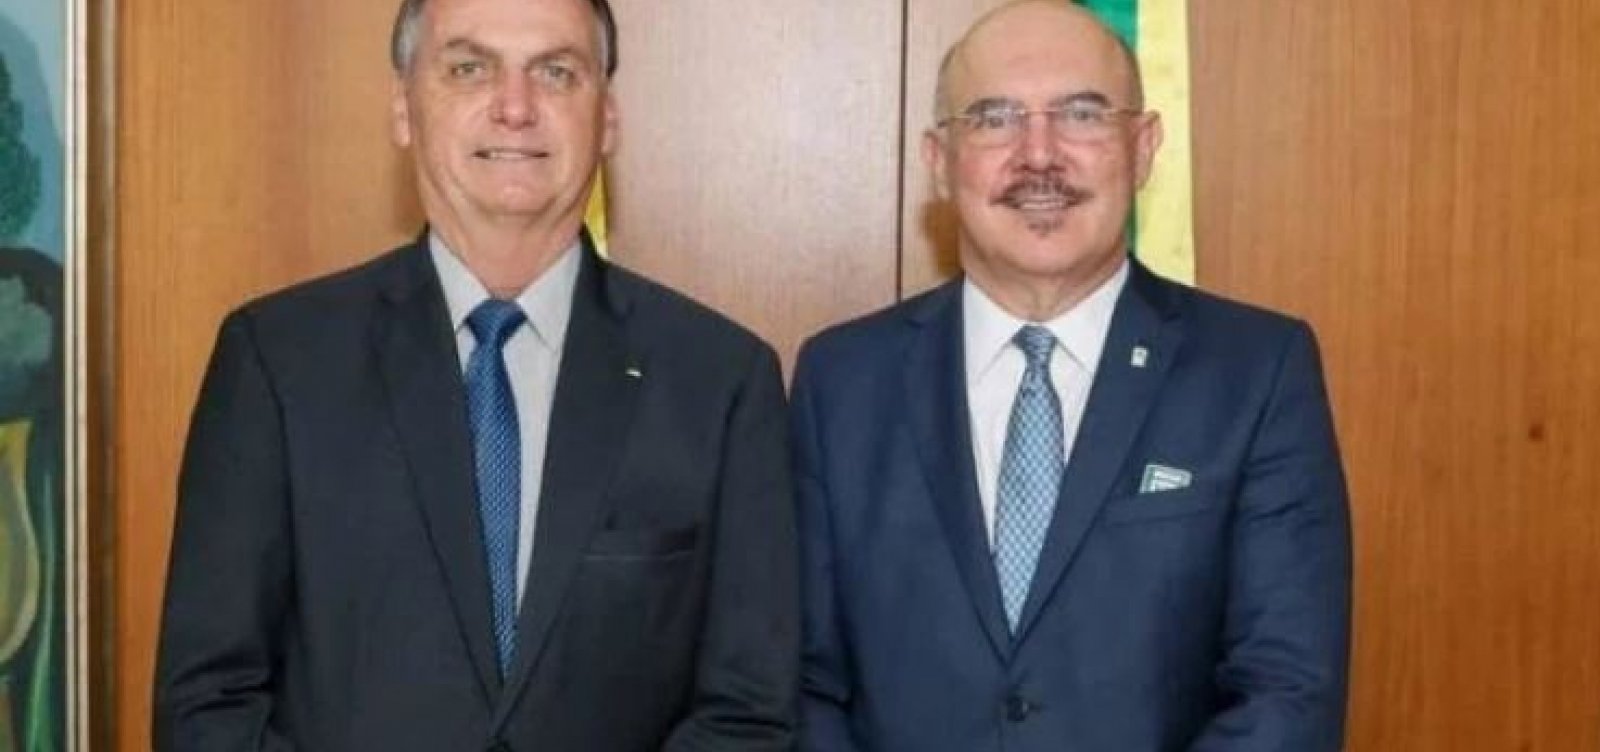 "Sinal de que não interfiro na PF", diz Bolsonaro sobre prisão de ex-ministro Milton Ribeiro